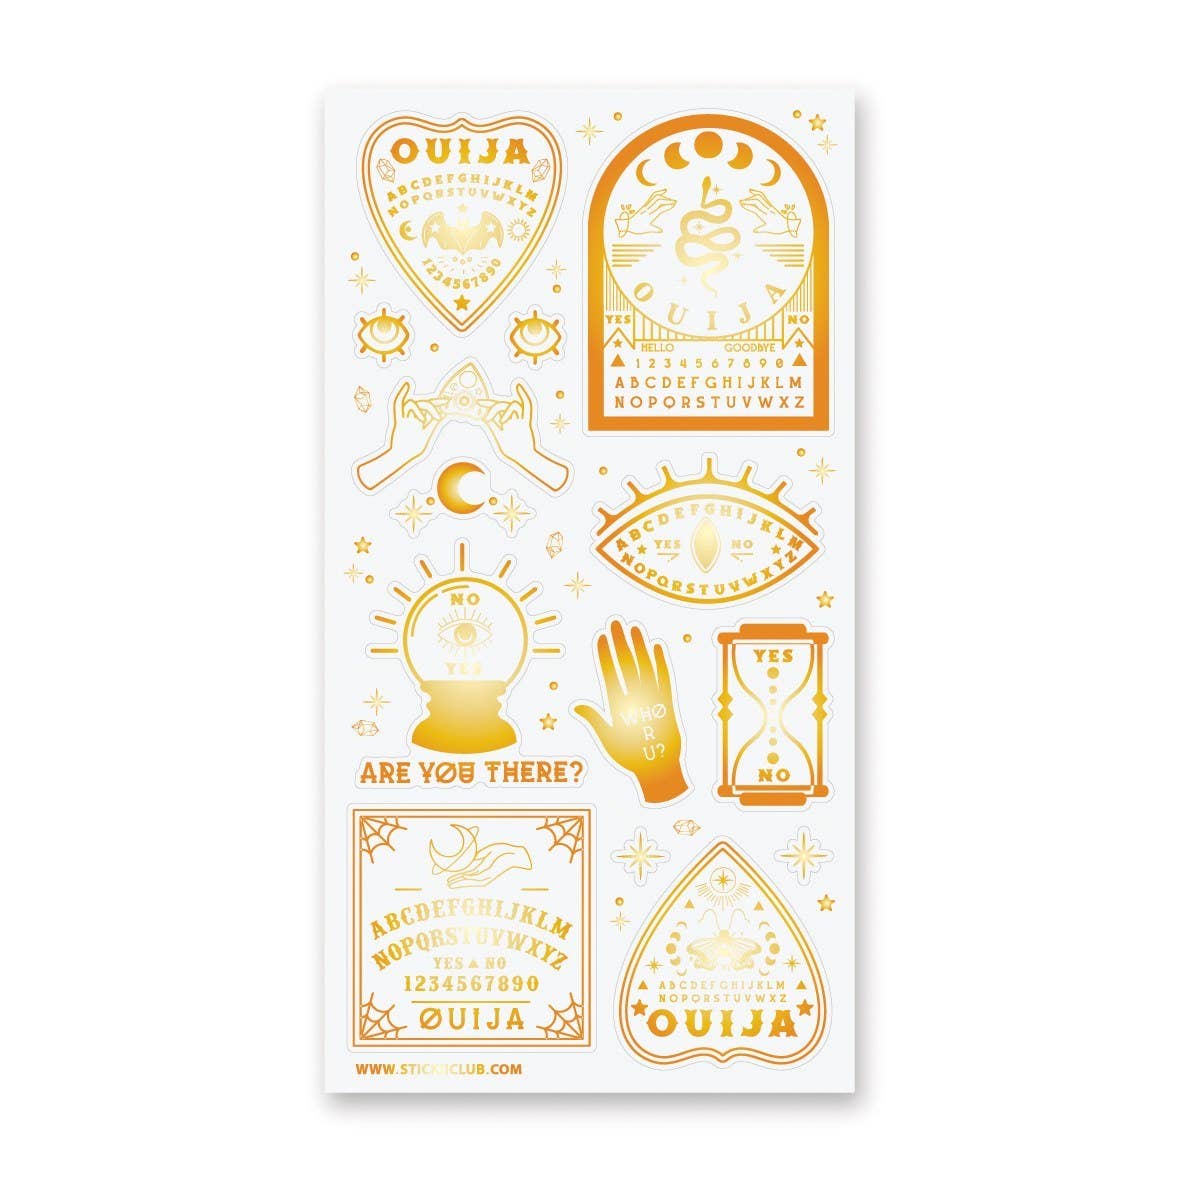 Golden Ouija Sticker Sheet